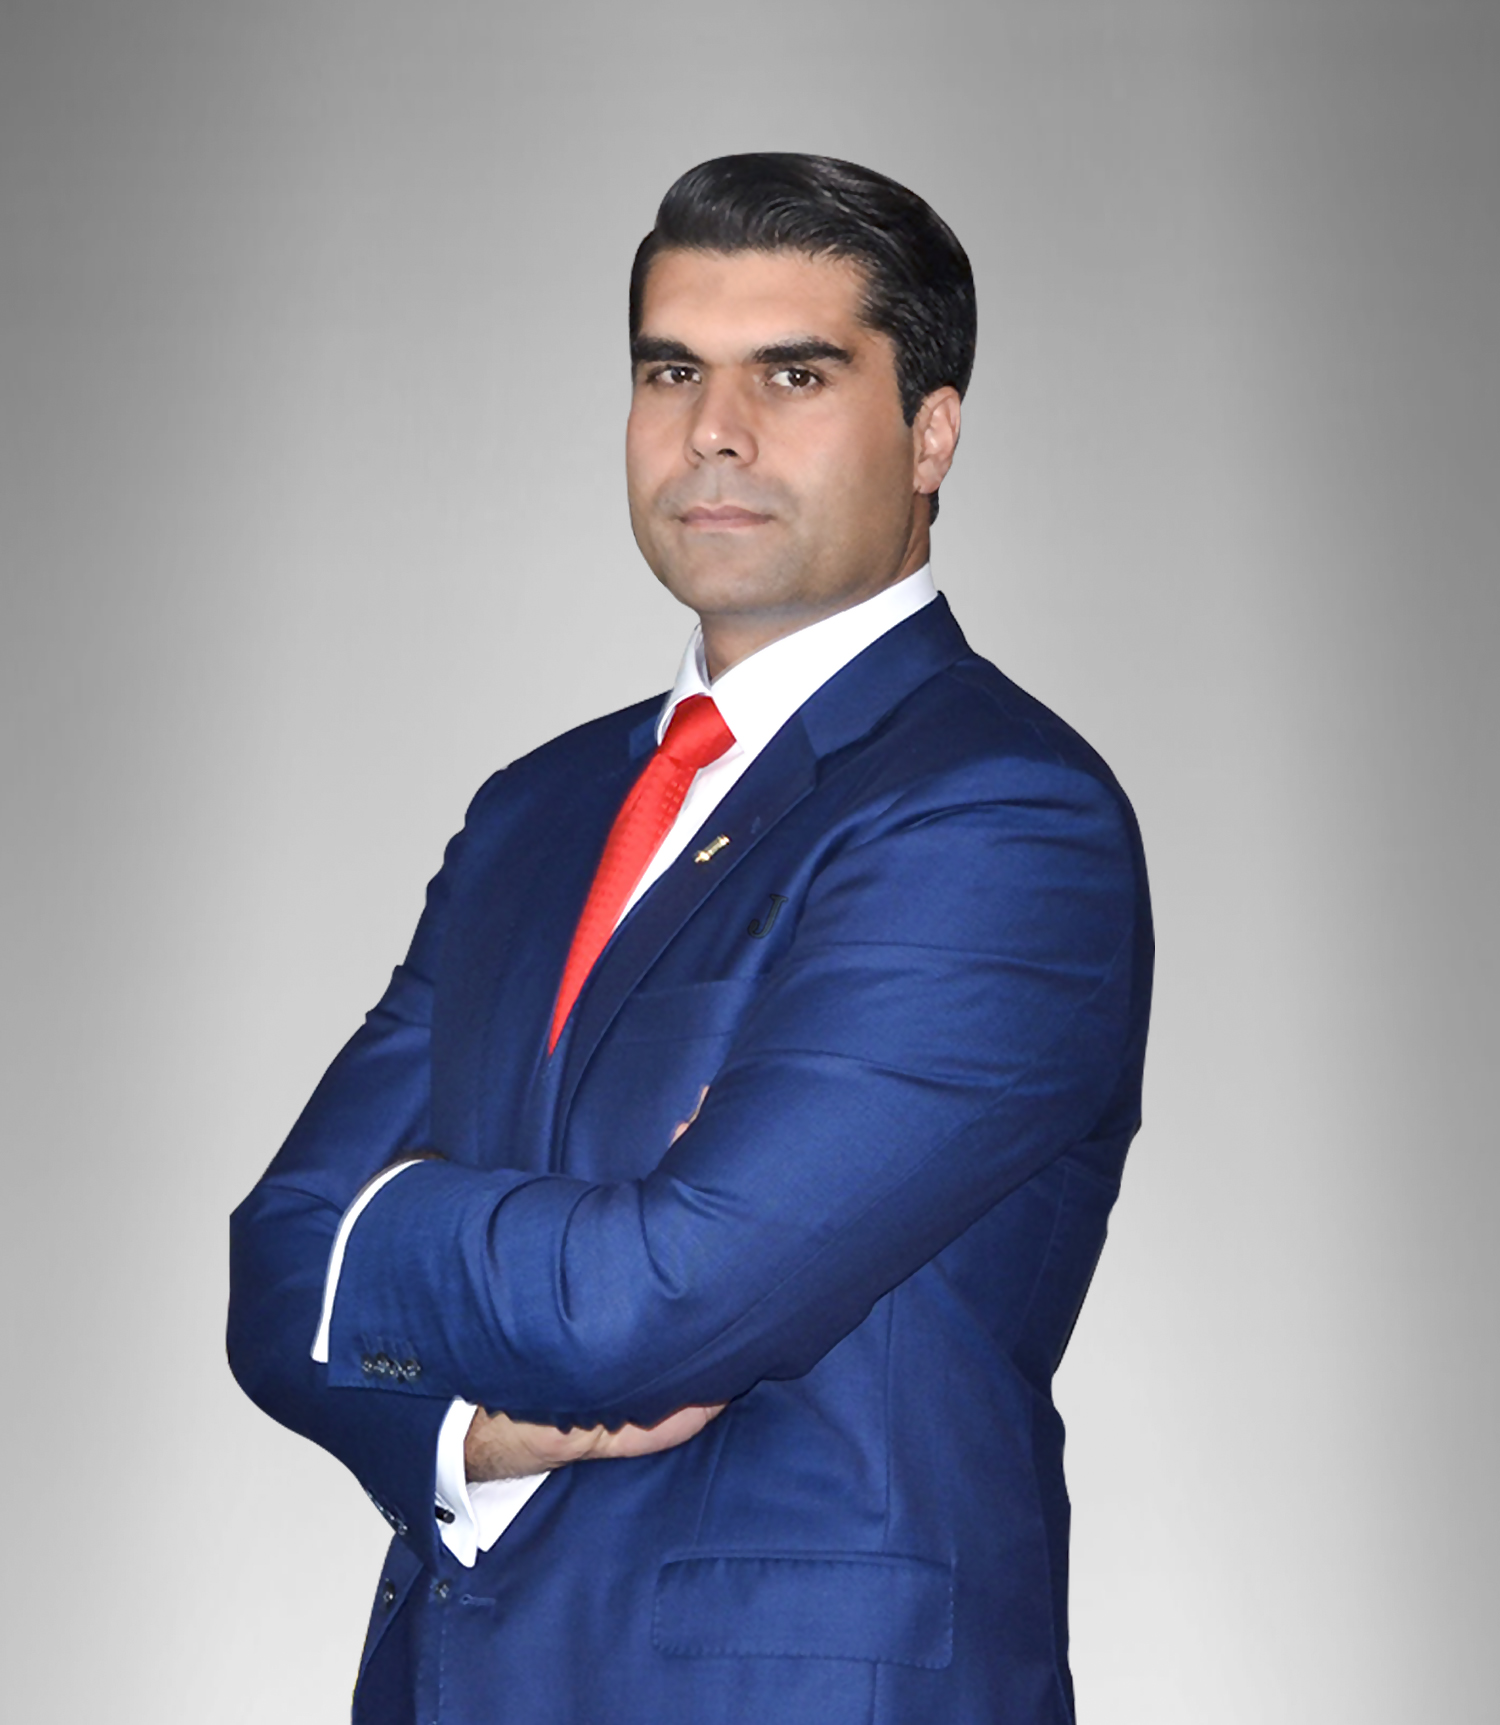 المؤسس و الرئيس التنفيذي لمجموعة فنادق و منتجعات جنة السيد نعمة عماد درويش